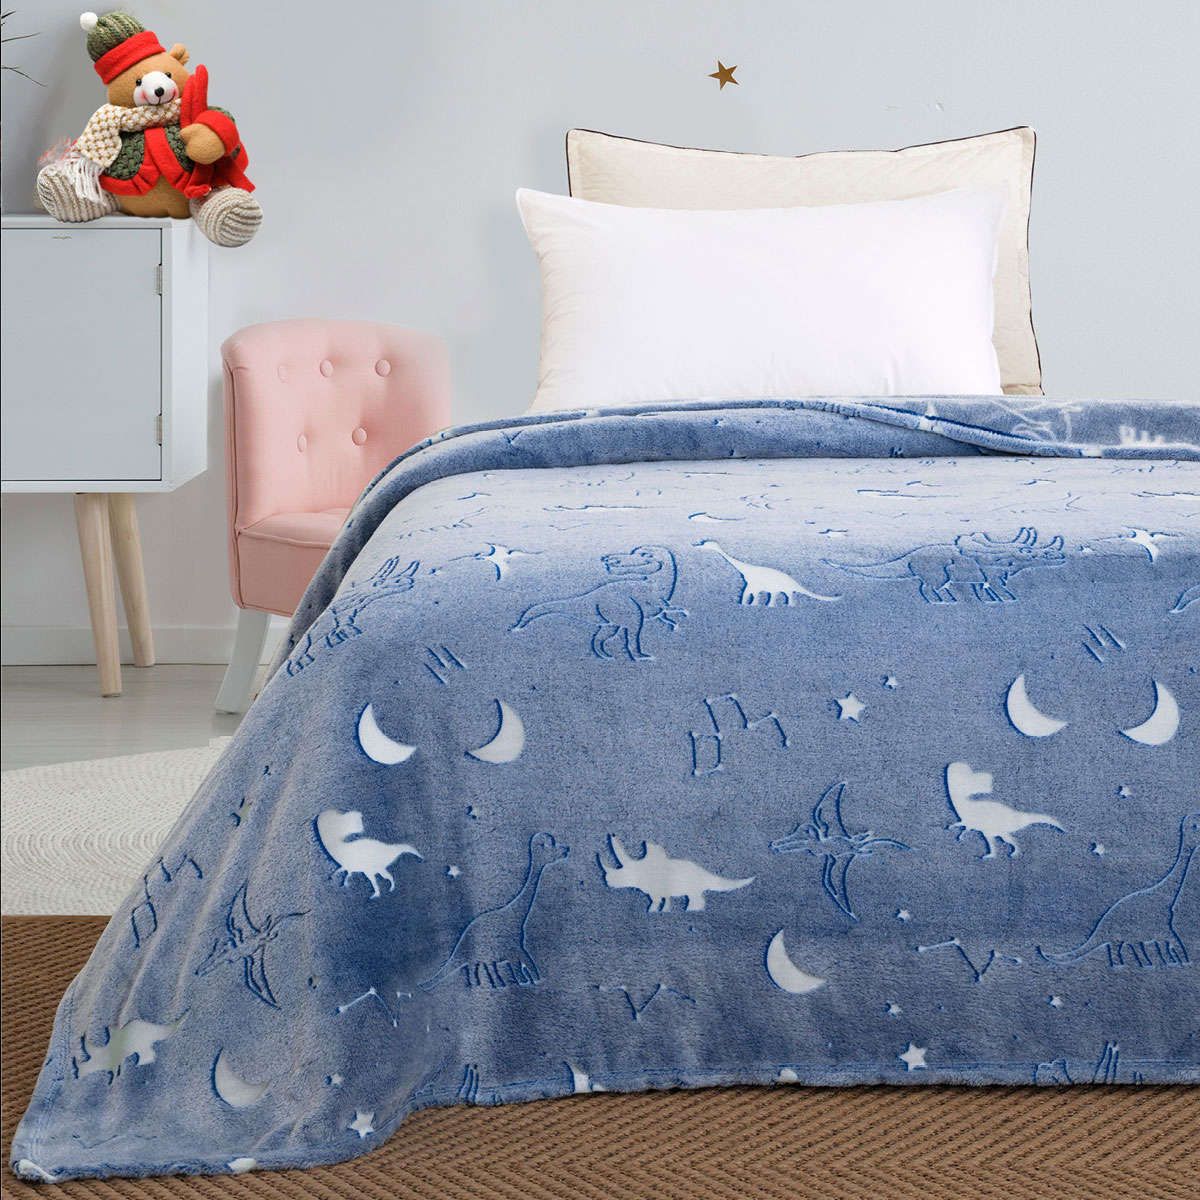 Παιδική κουβέρτα μονή φωσφορίζουσα Flash Art 6128 light blue beauty home